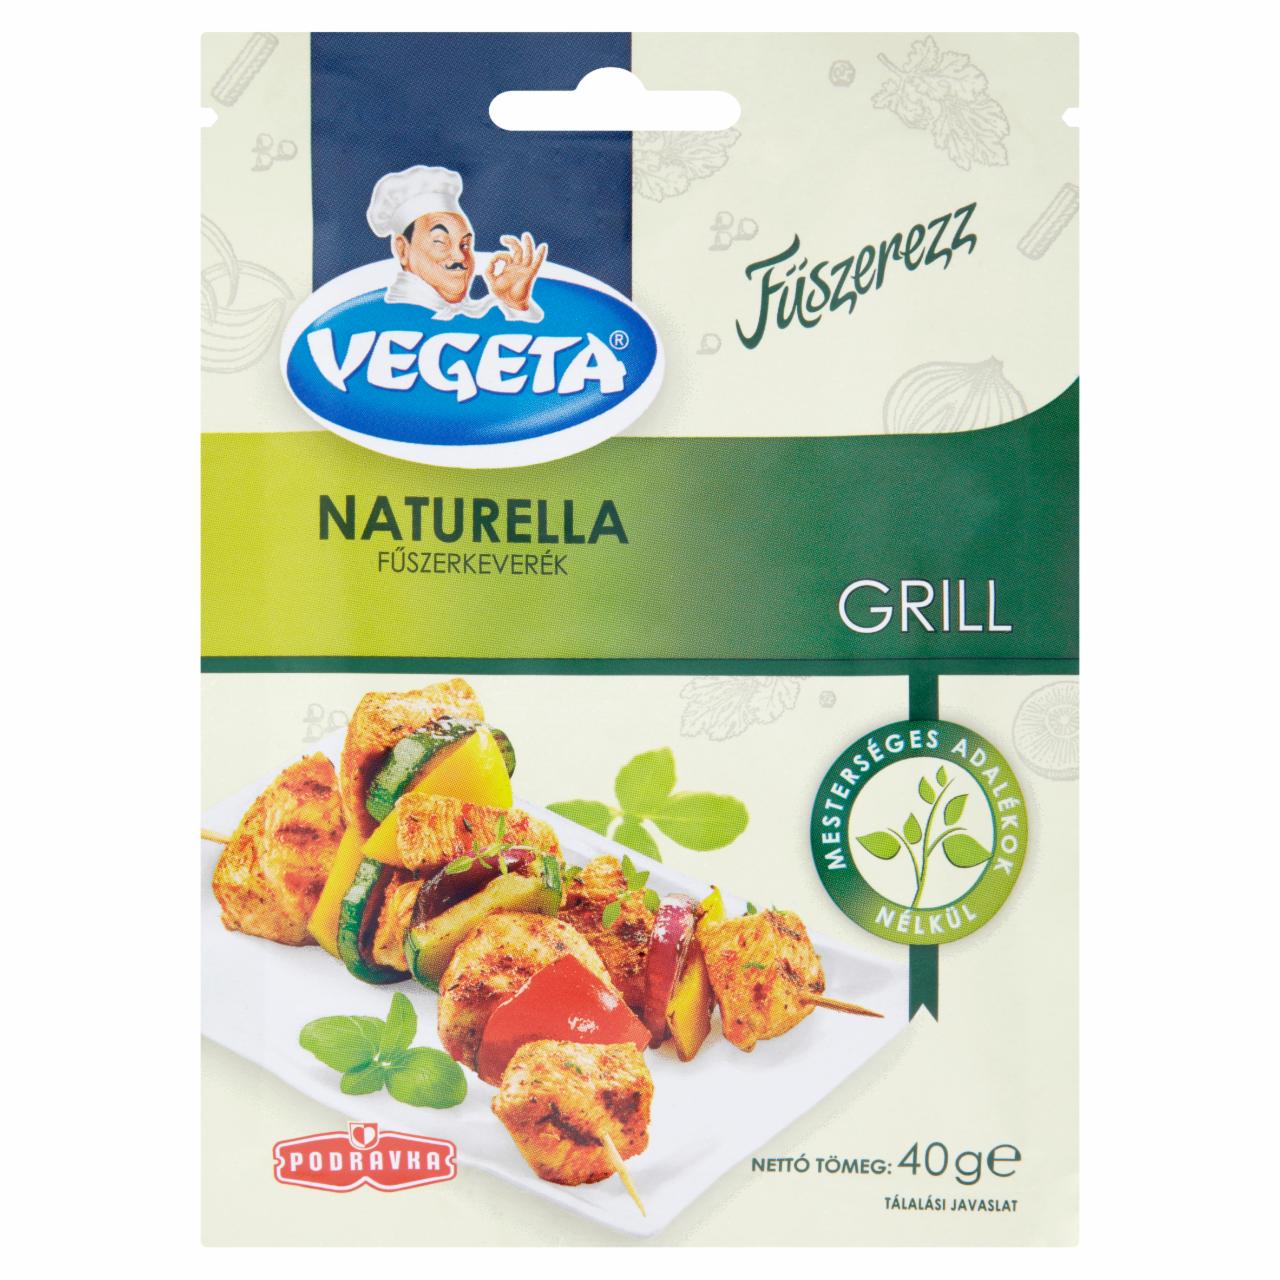 Képek - Vegeta Naturella grill fűszerkeverék 40 g